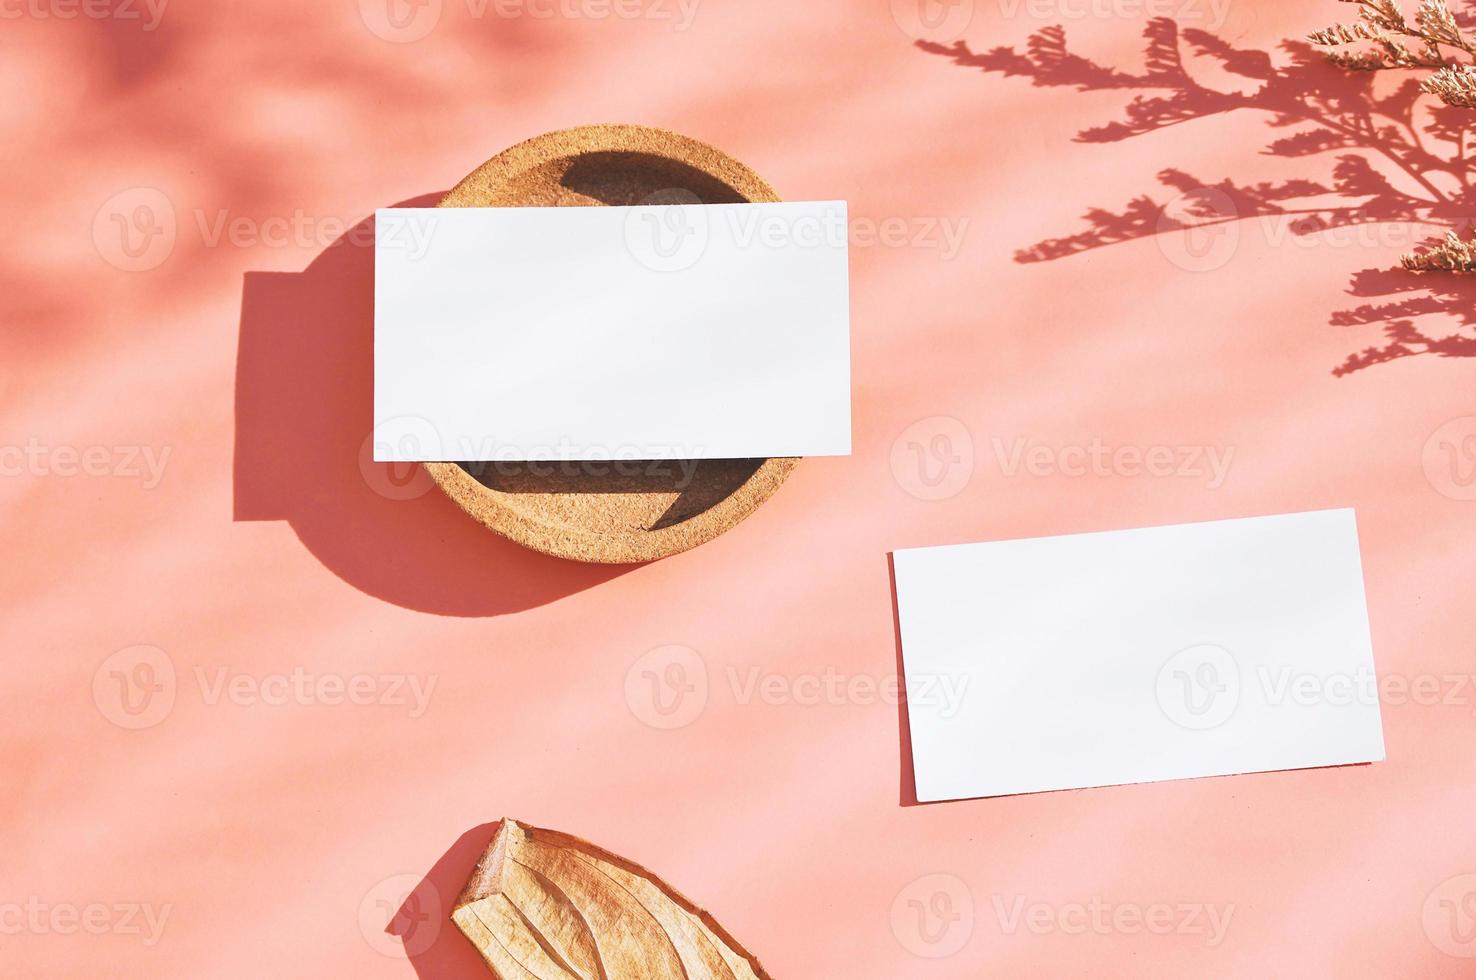 mise à plat de la carte de visite d'identité de marque sur fond orange avec fleur et feuille sèches, concept minimal de lumière et d'ombre pour la conception, style de saison d'automne photo